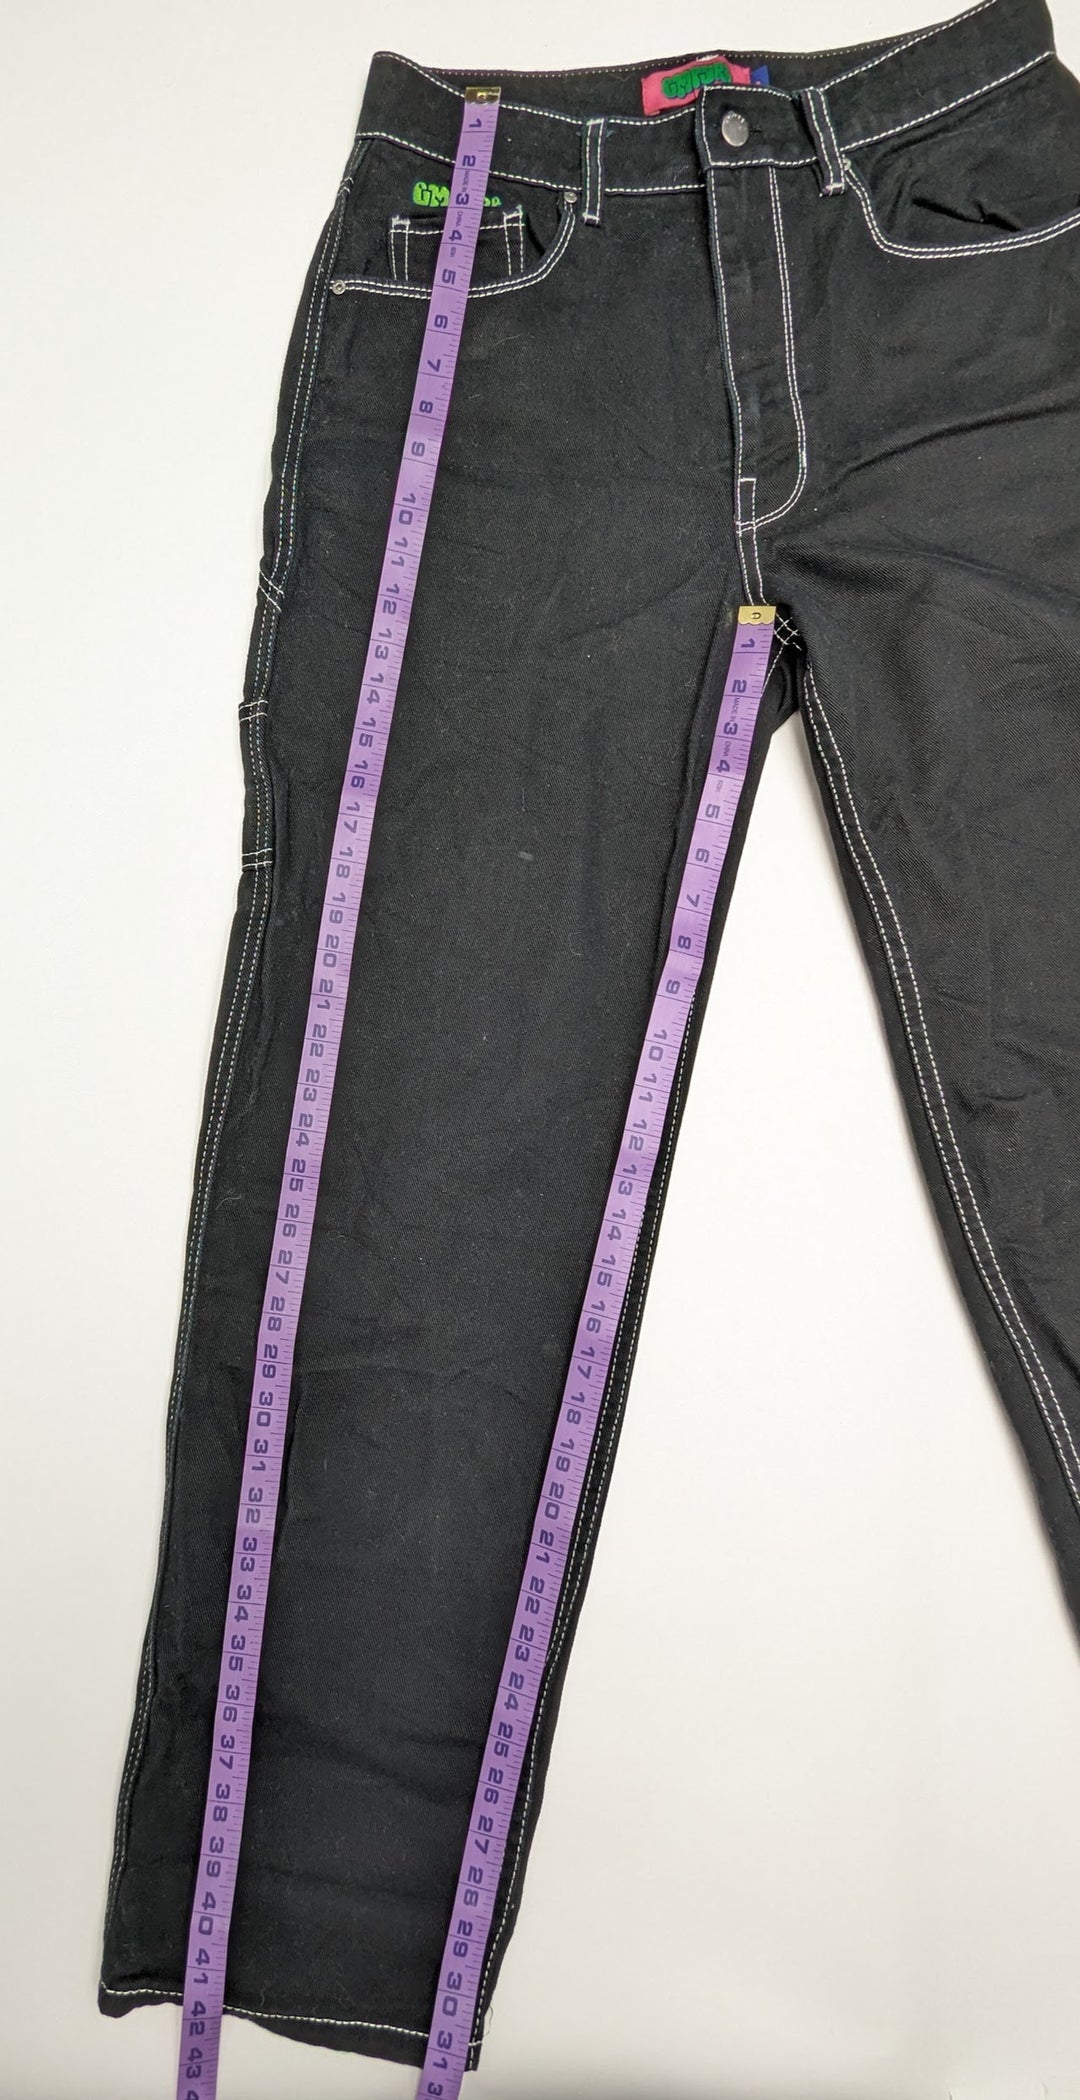 Empyre Jeans 1 pc 1 lb C0124213 - Raghouse